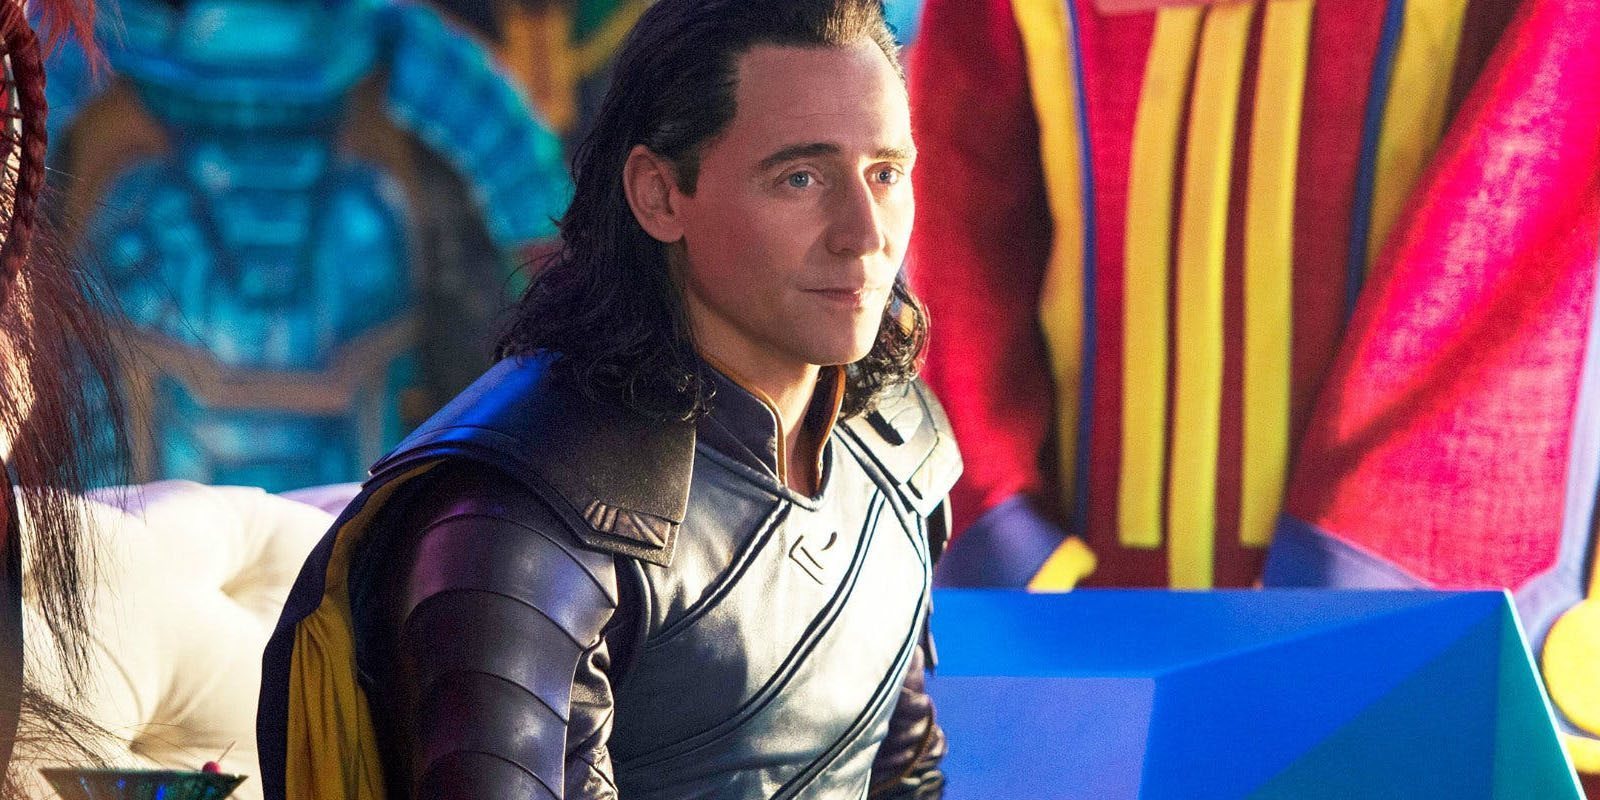 La serie sobre Loki estaría centrada en la infancia del personaje